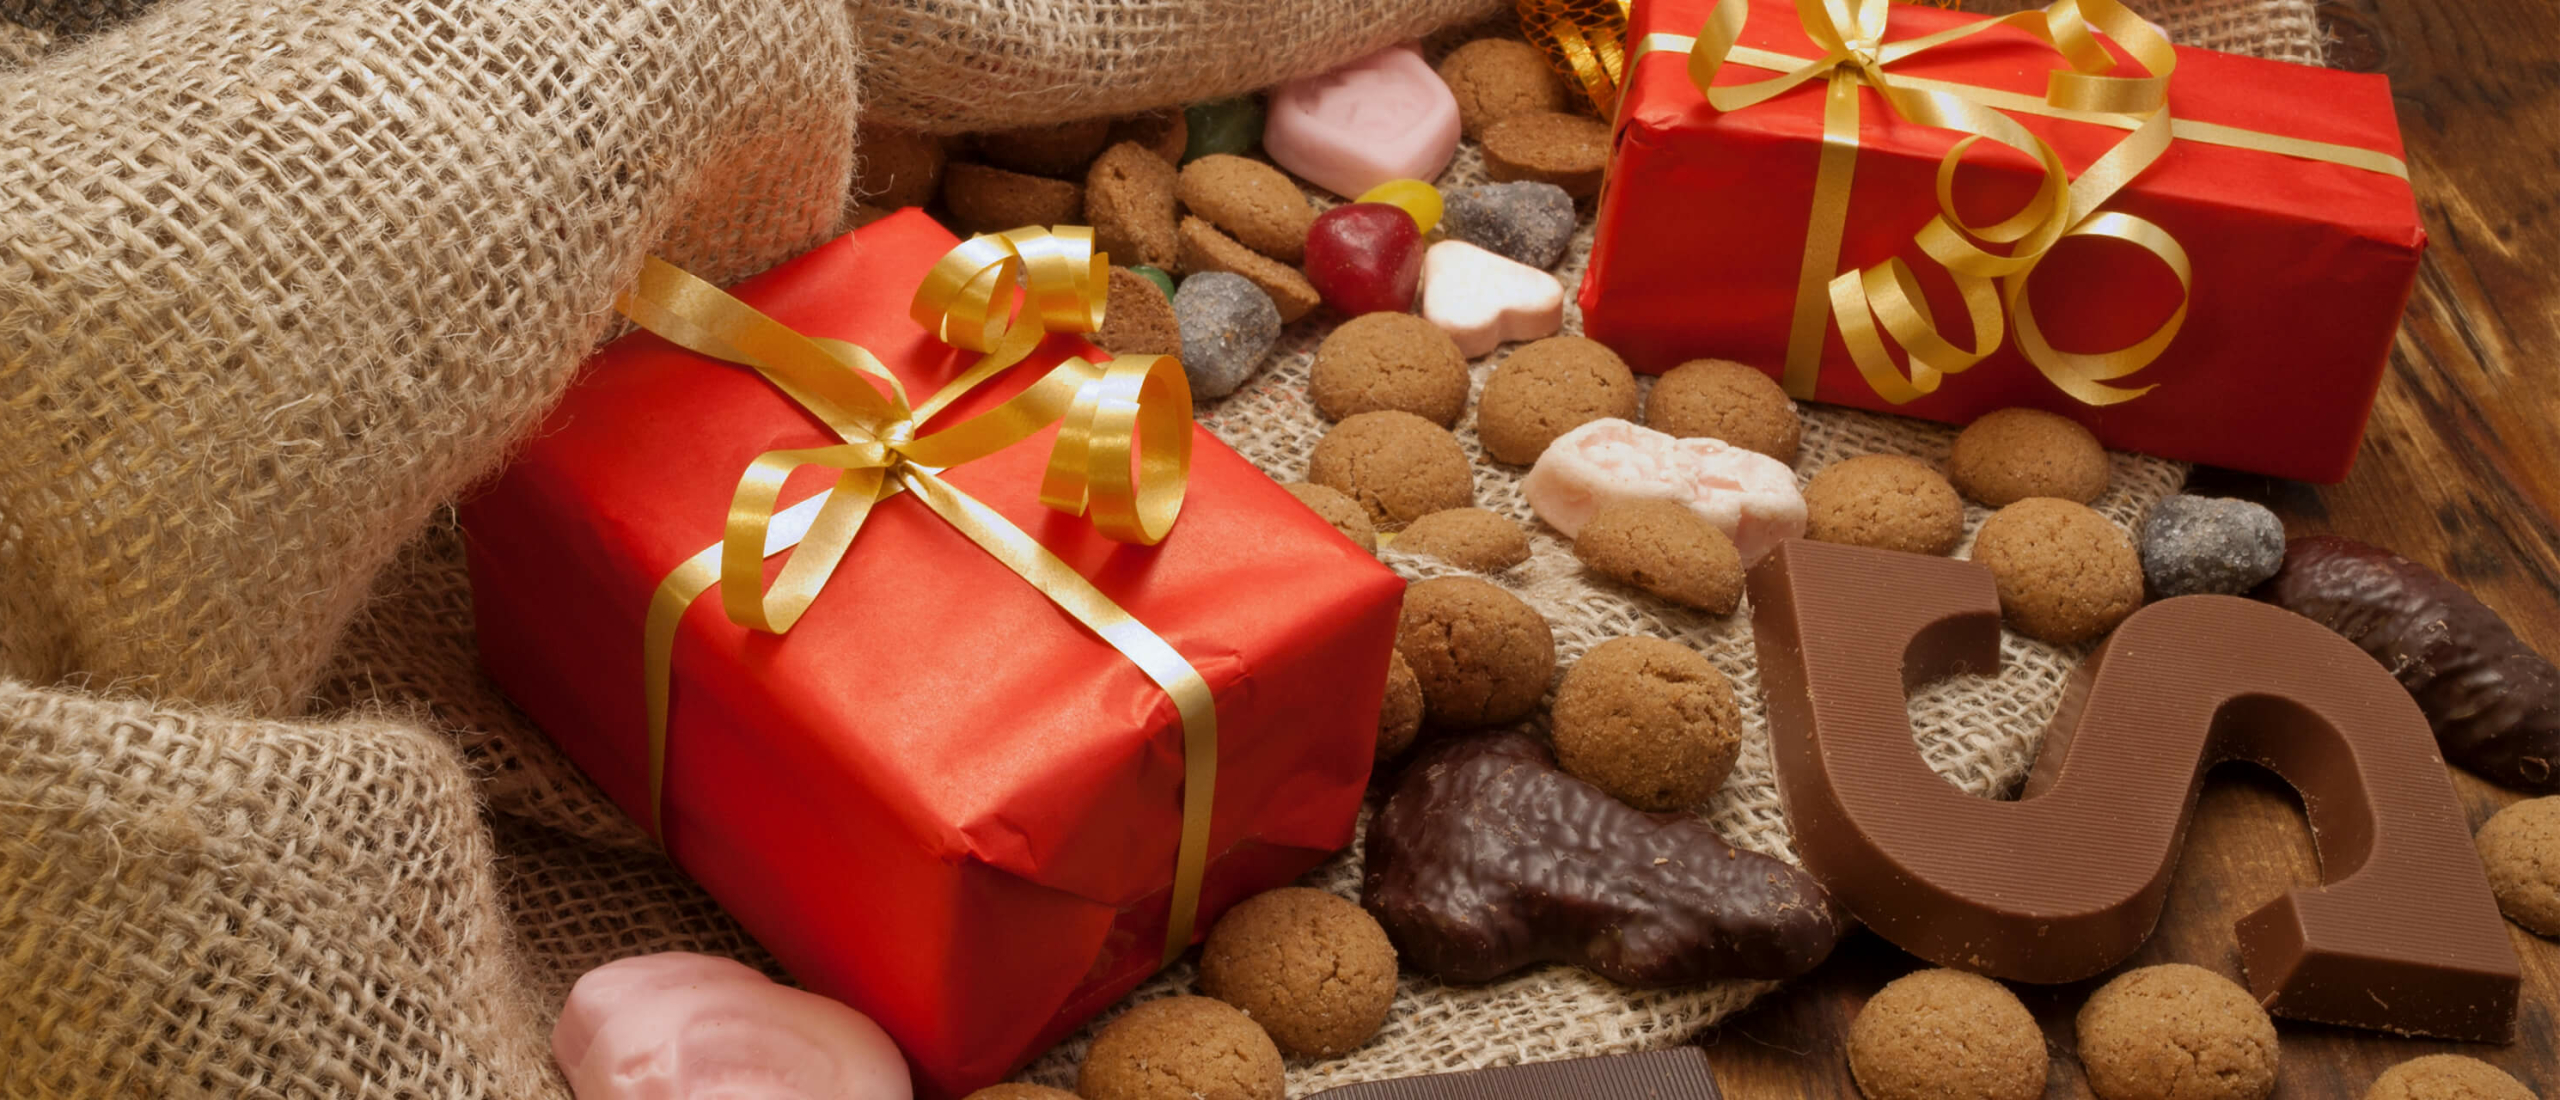 Mijlpaal tweedehands kofferbak De leukste Sinterklaas cadeautjes voor je ouders, broertje, zus of vriendin